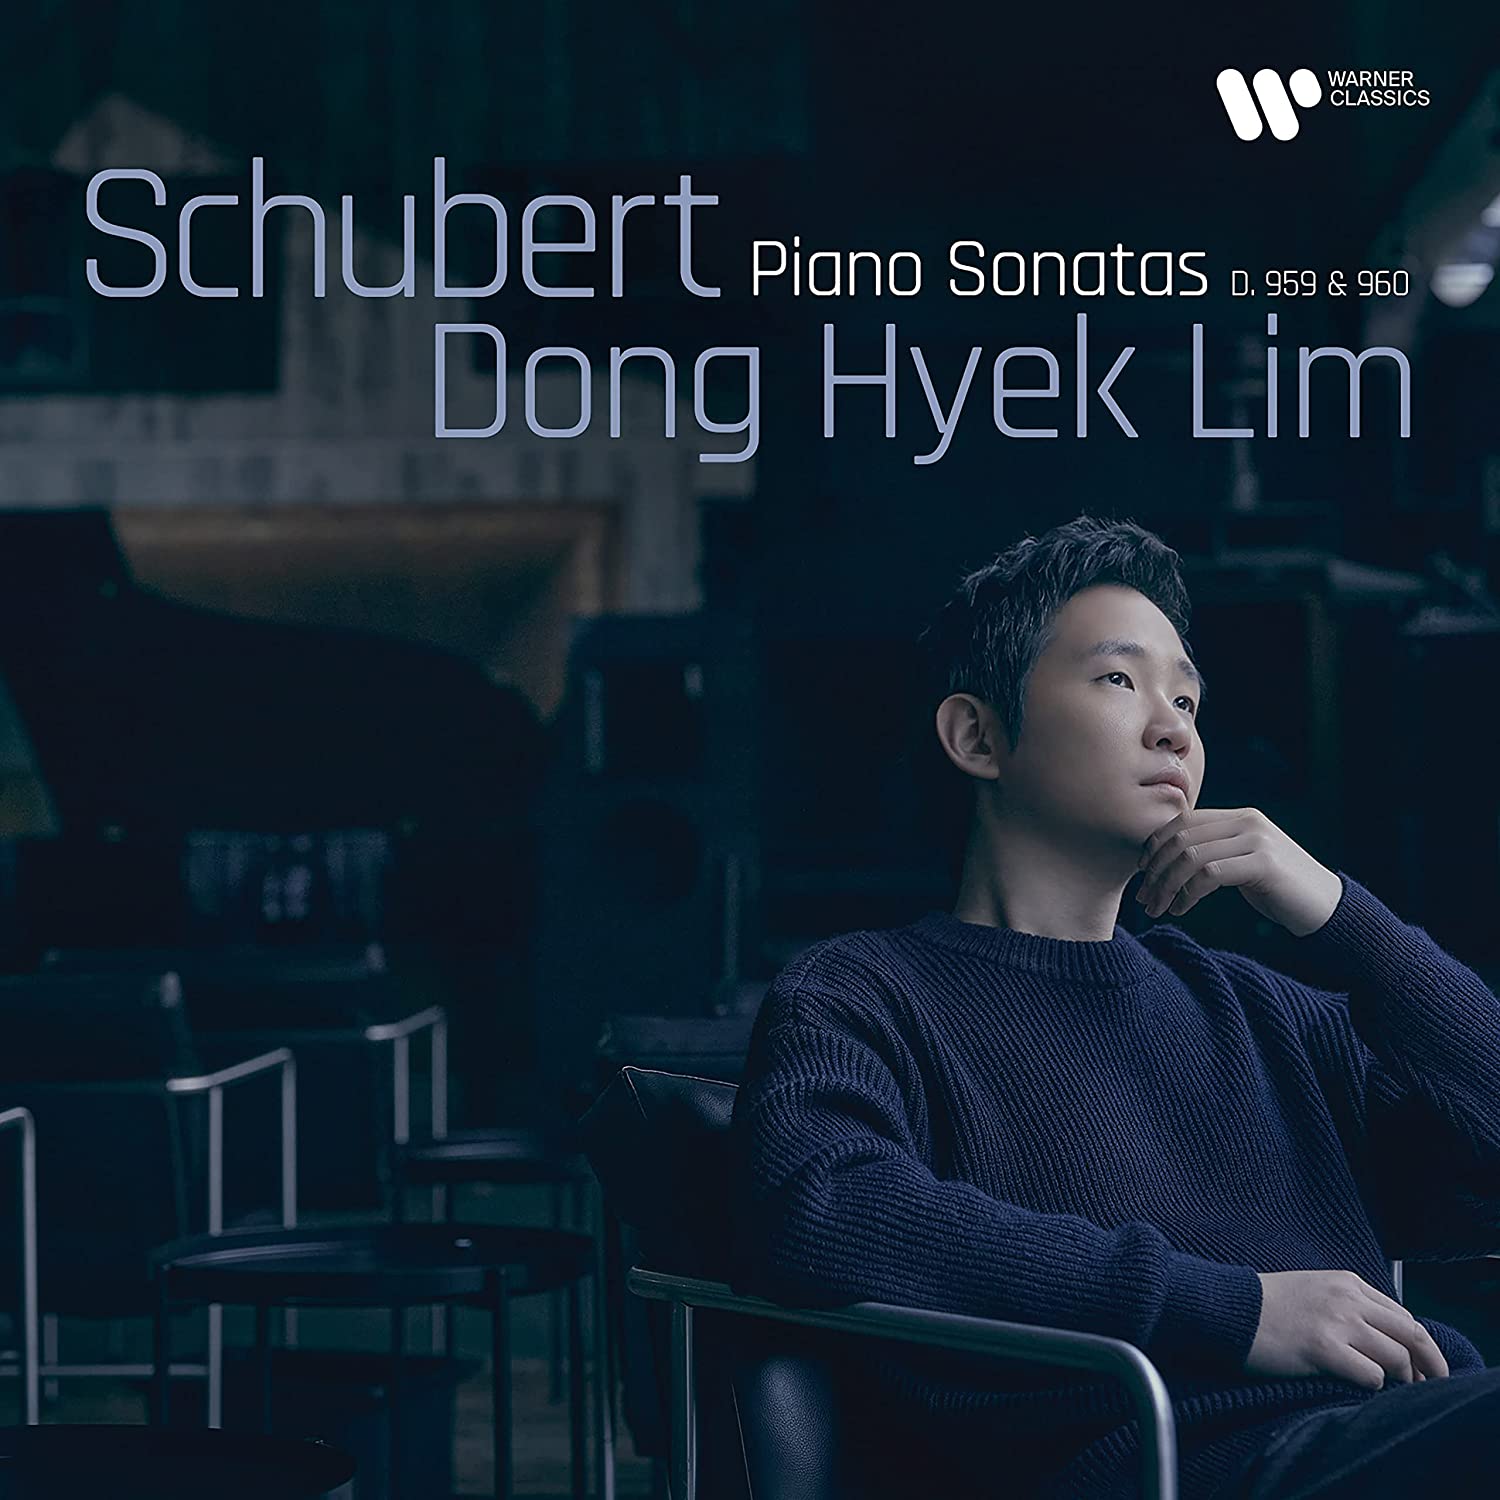 Schubert: Piano Sonatas D959 & D960 - Dong Hyek Lim